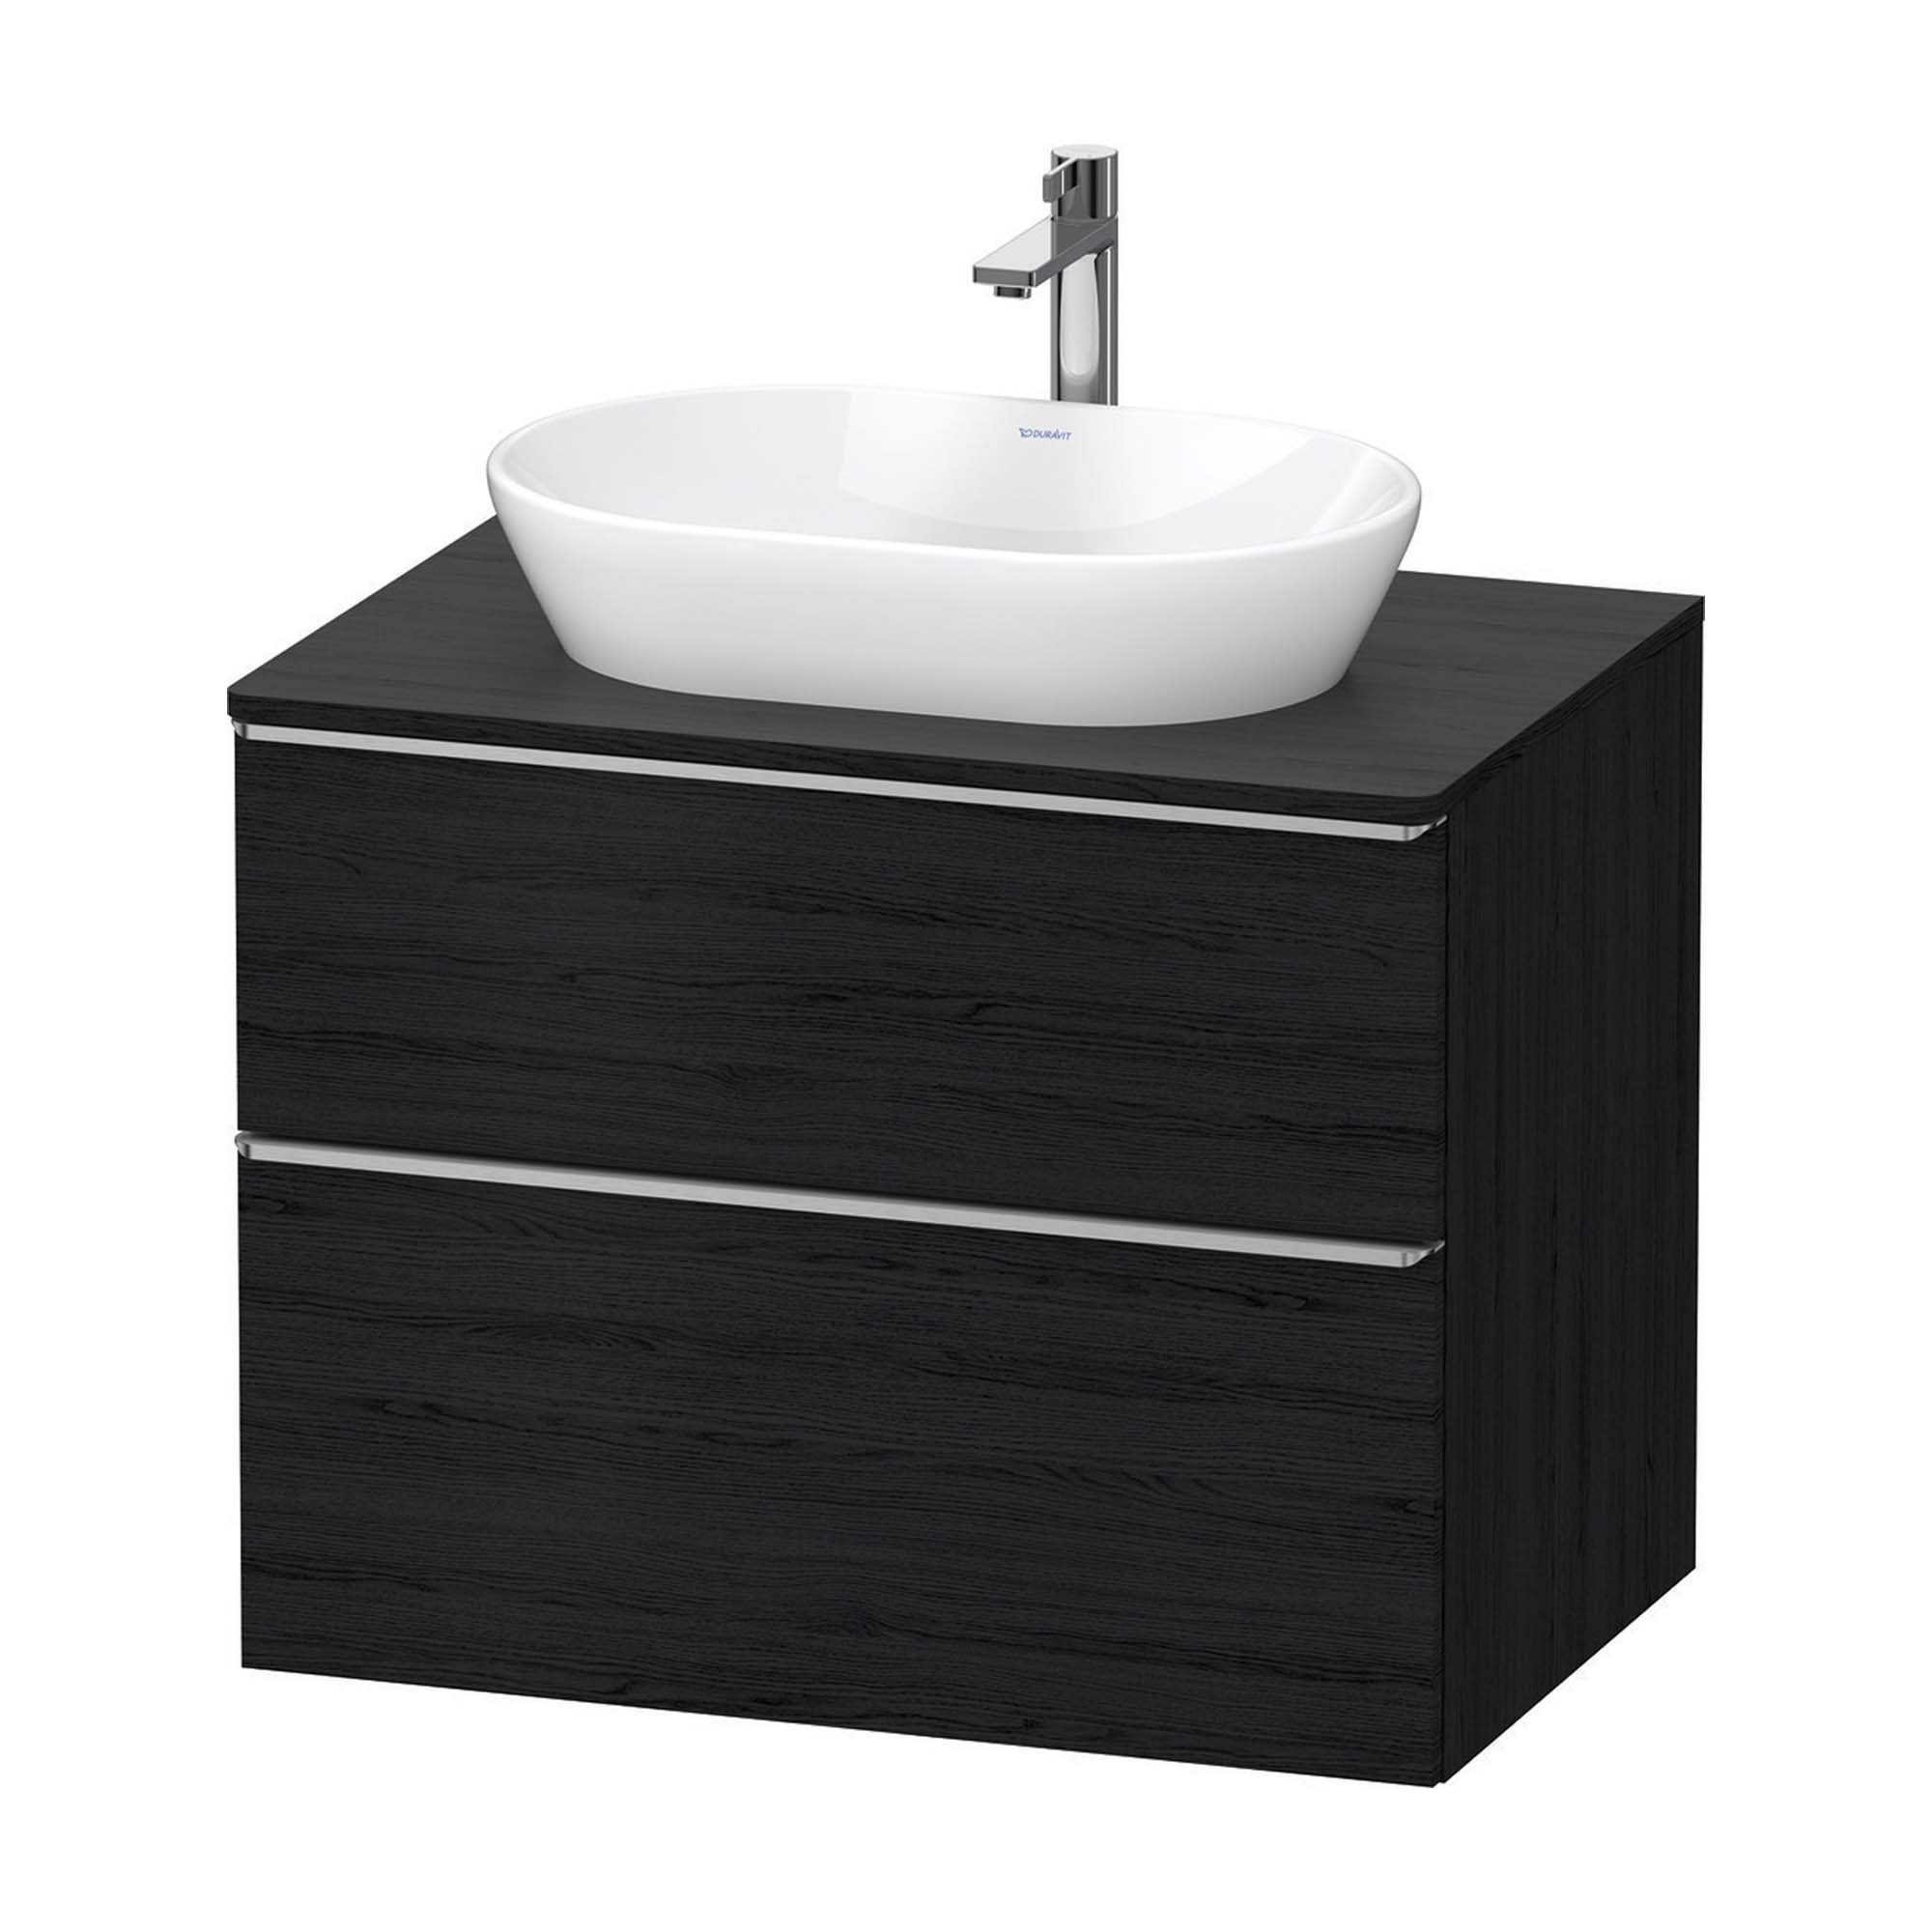 duravit d-neo 800 wall mounted vanity unit with worktop black oak stainless steel handles